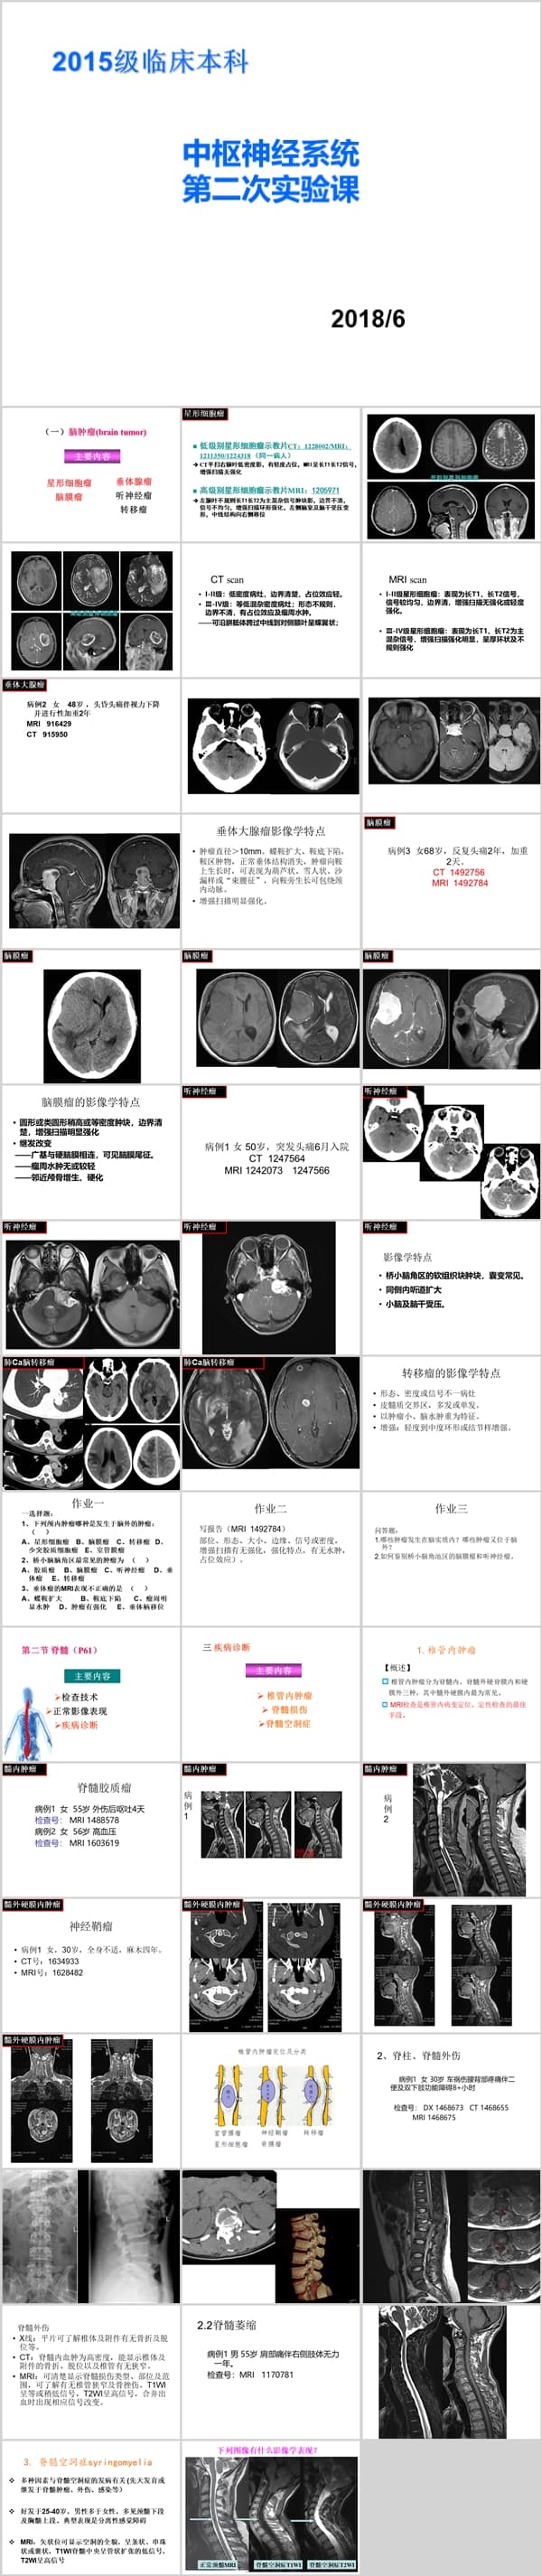 中枢神经系统 第二次实验课（一）脑肿瘤(brain tumor).ppt